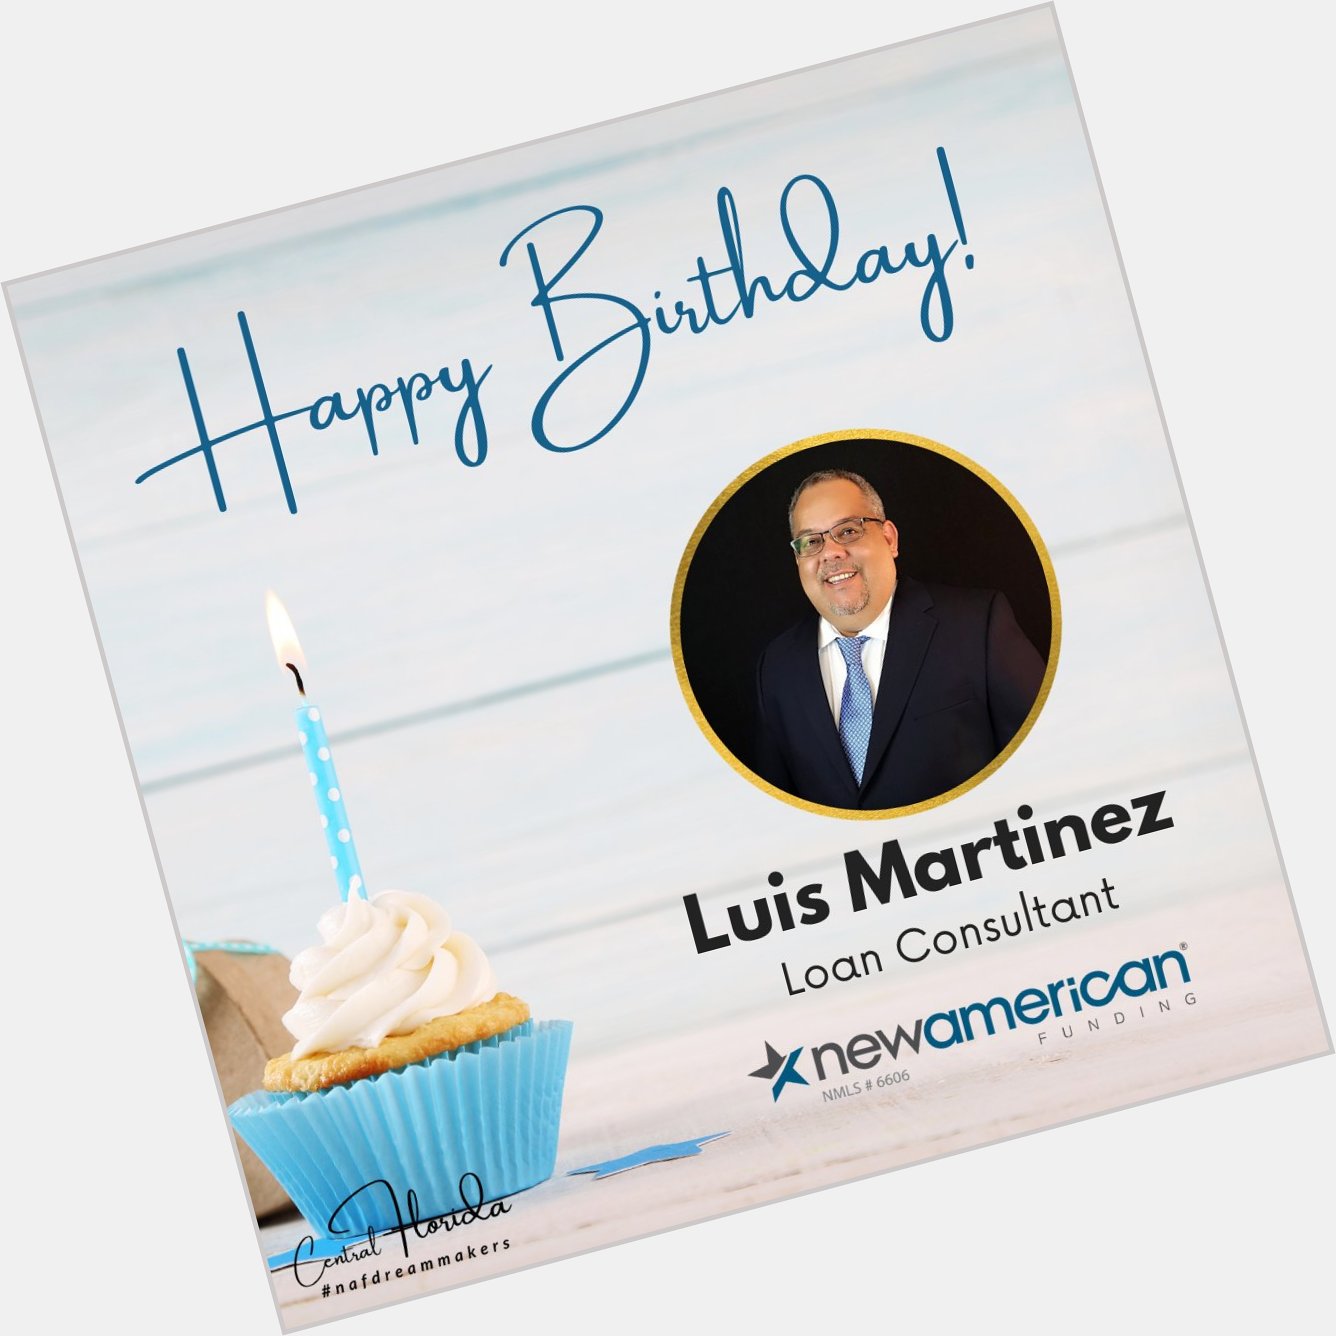 Happy Birthday to Luis Martinez! We wish you an amazing day.   